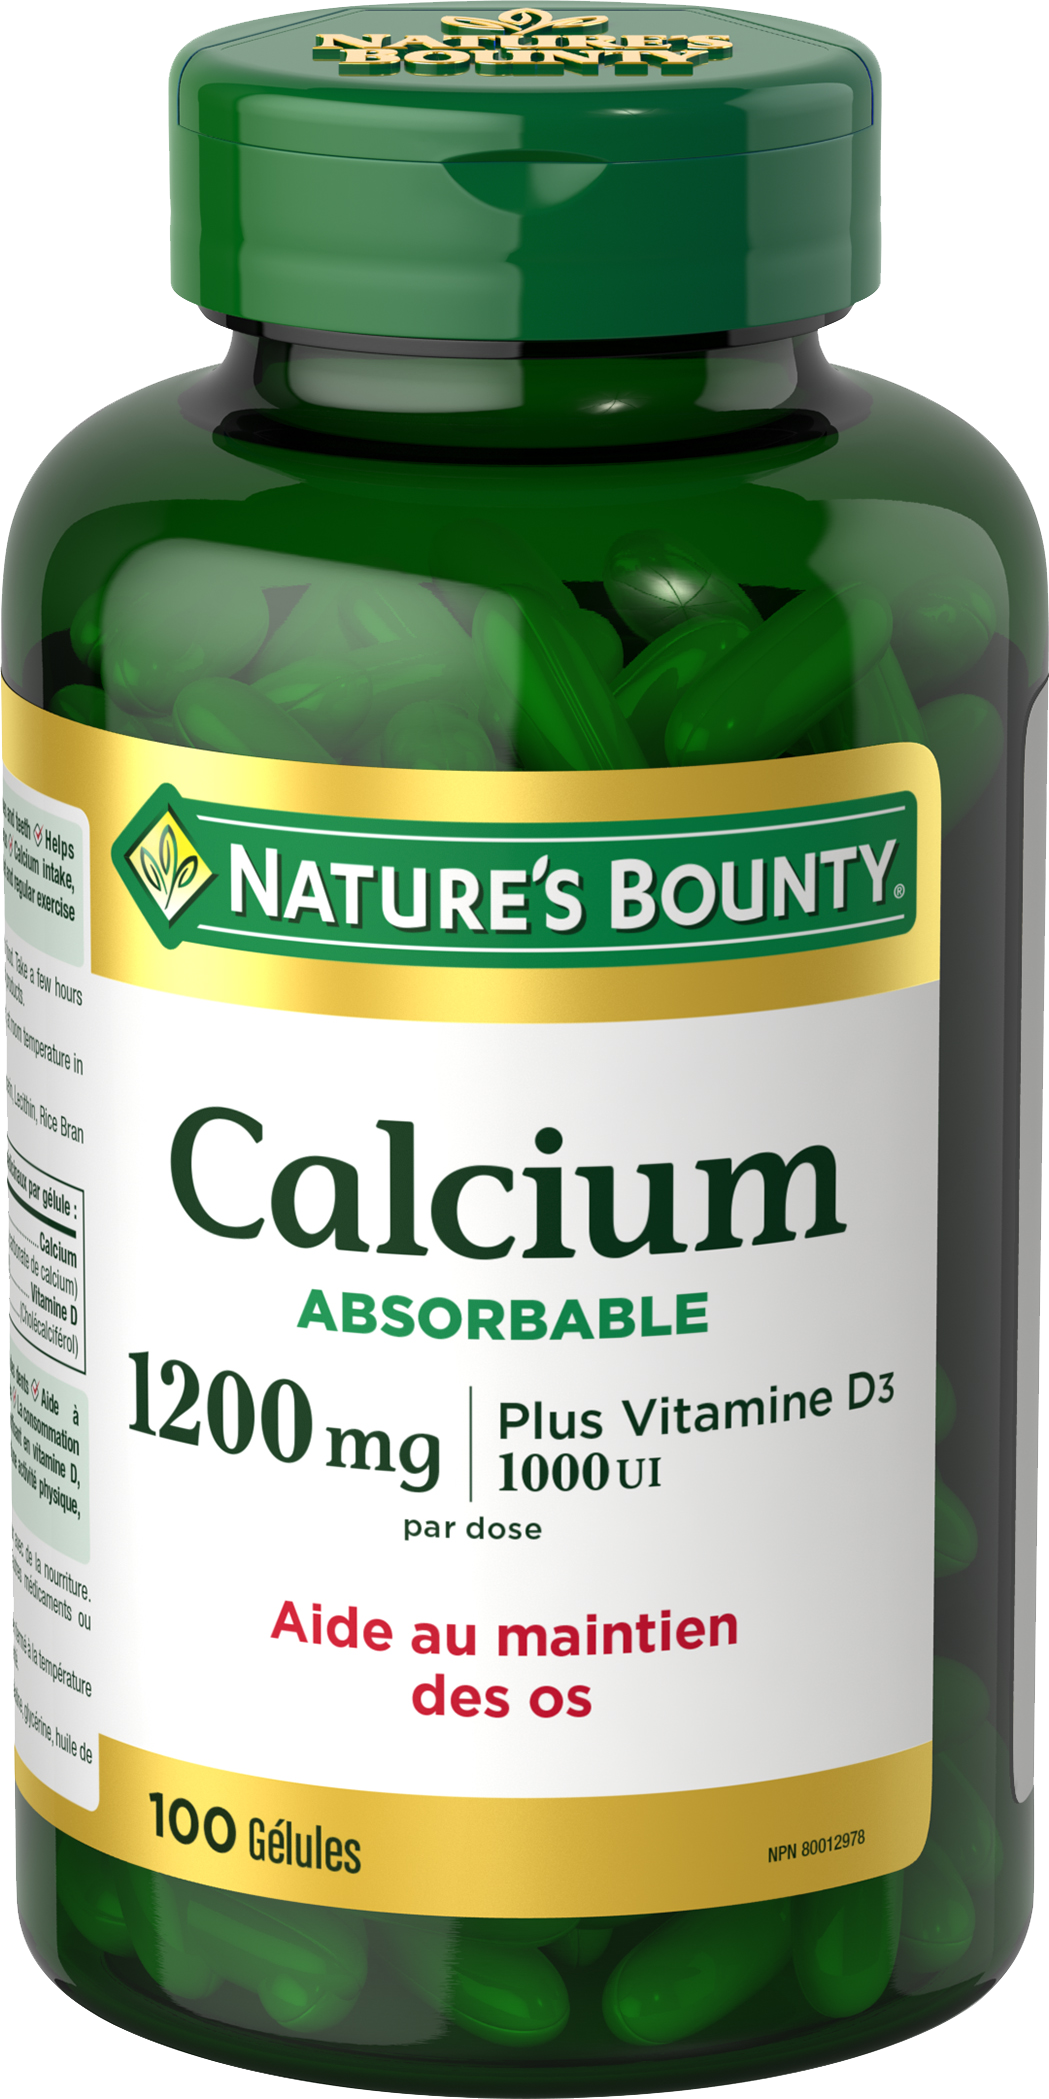 Calcium Absorbable plus Vitamine D3